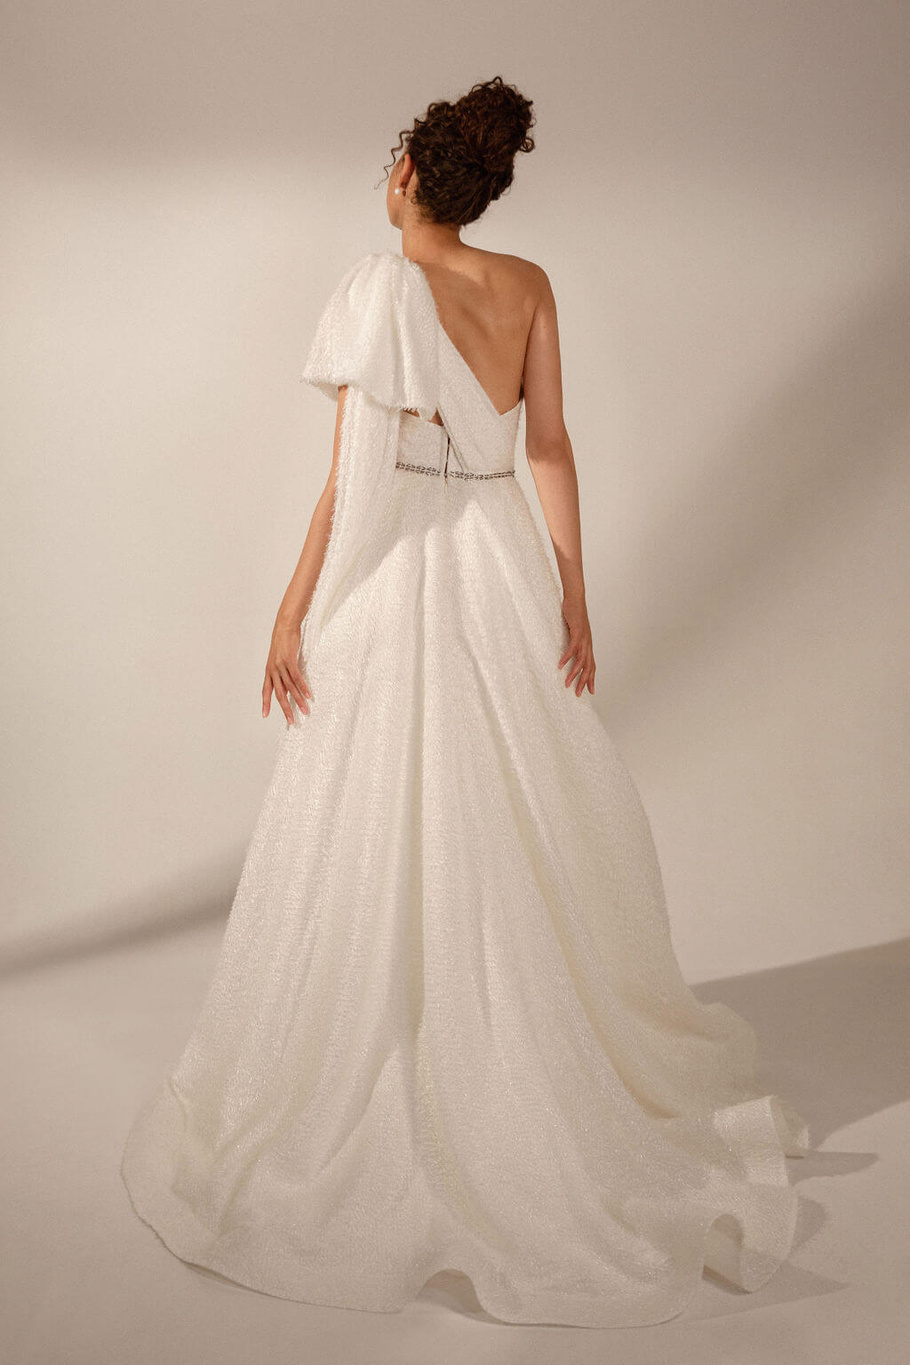 Купить свадебное платье «Любовь» Рара Авис из коллекции Искра 2021 года в интернет-магазине